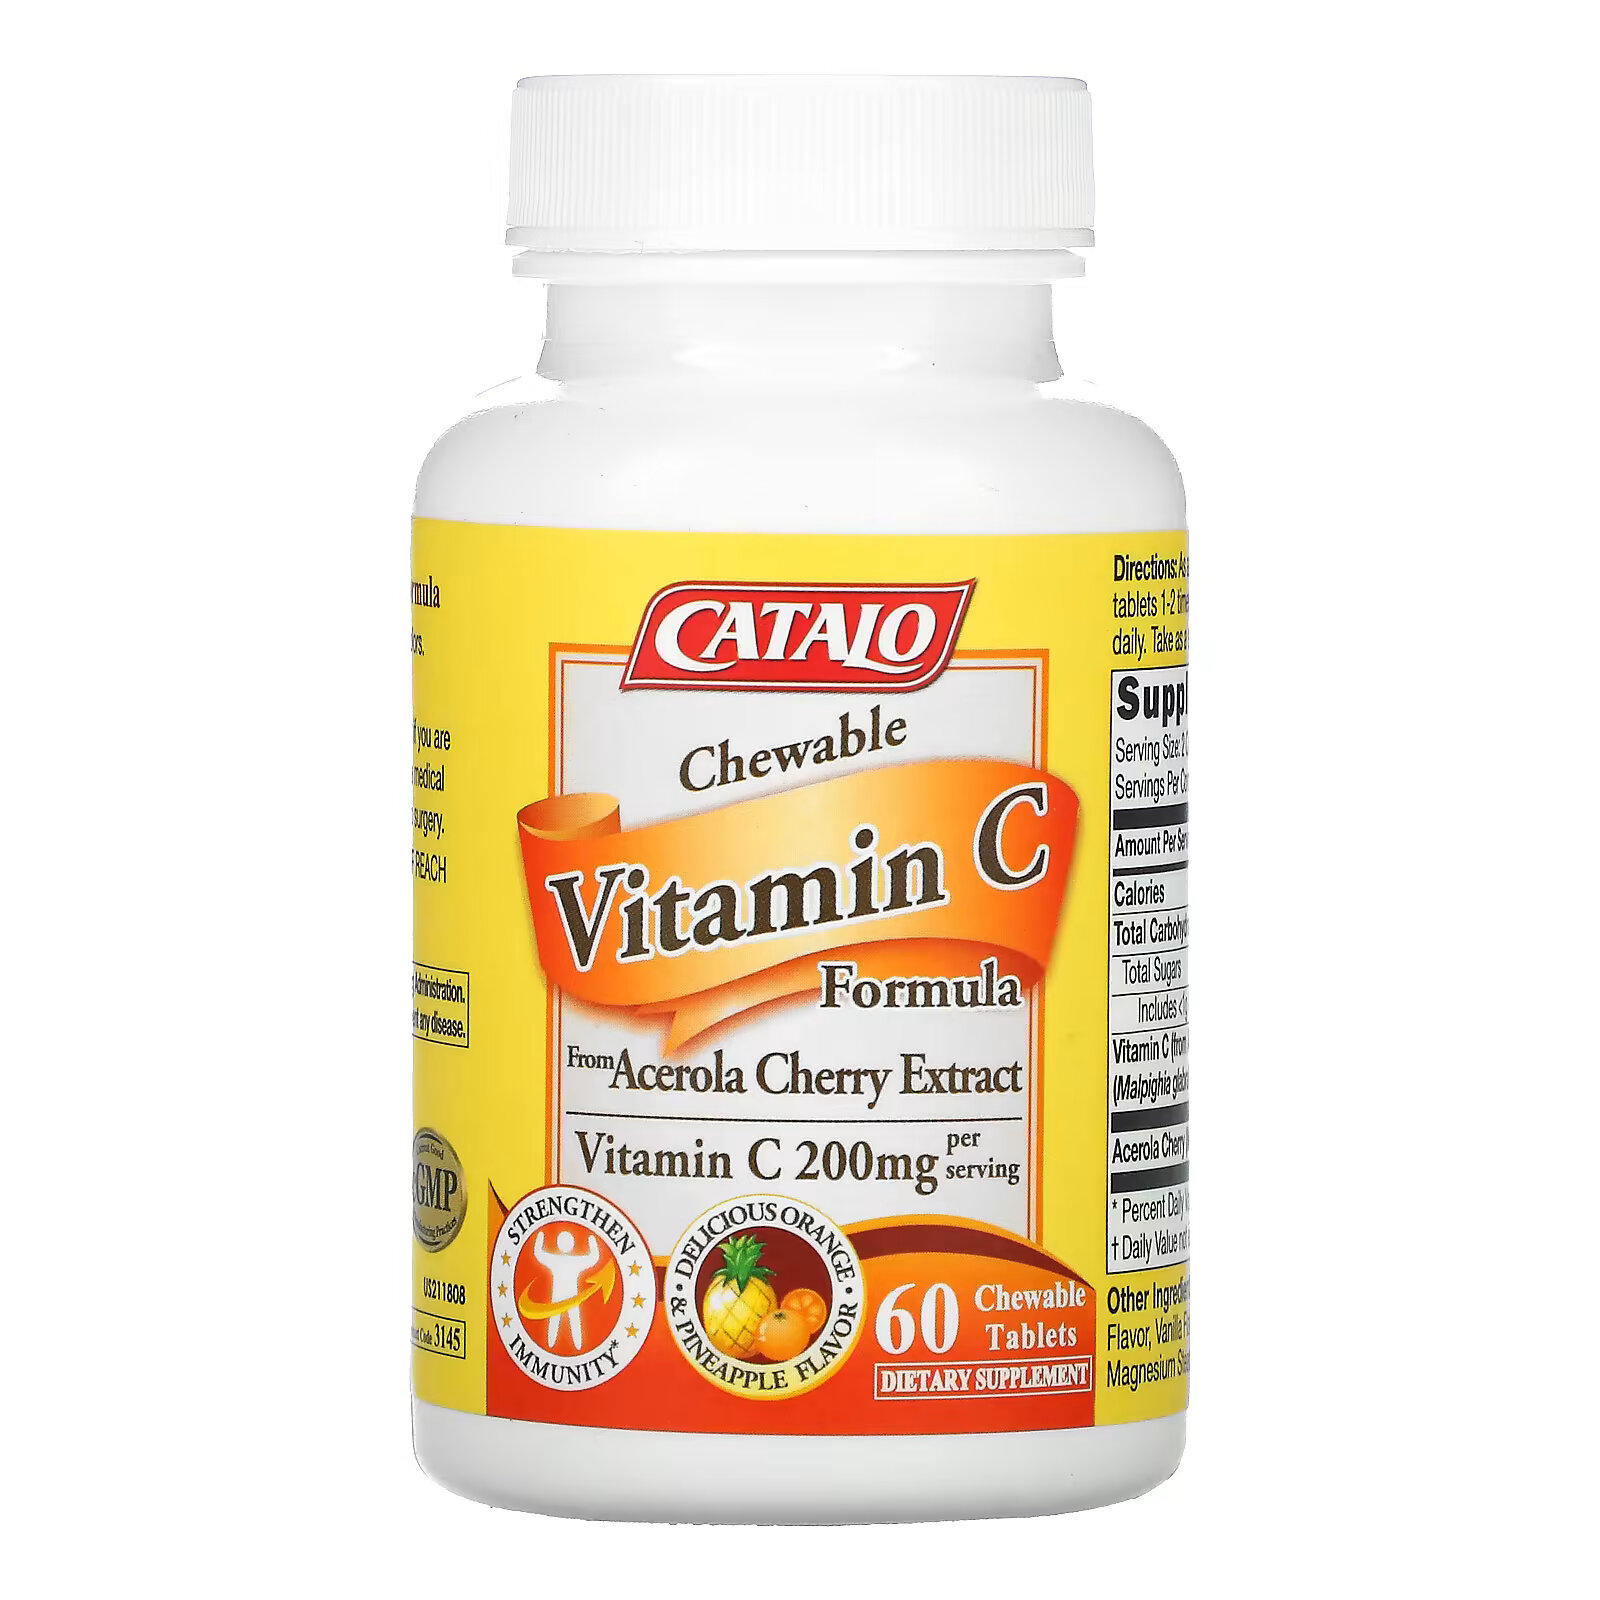 Витамин C со вкусом апельсина и ананаса Catalo Naturals 100 мг, 60 жевательных таблеток catalo naturals жевательный витамин с апельсин и ананас 200 мг 60 жевательных таблеток 100 мг на таблетку